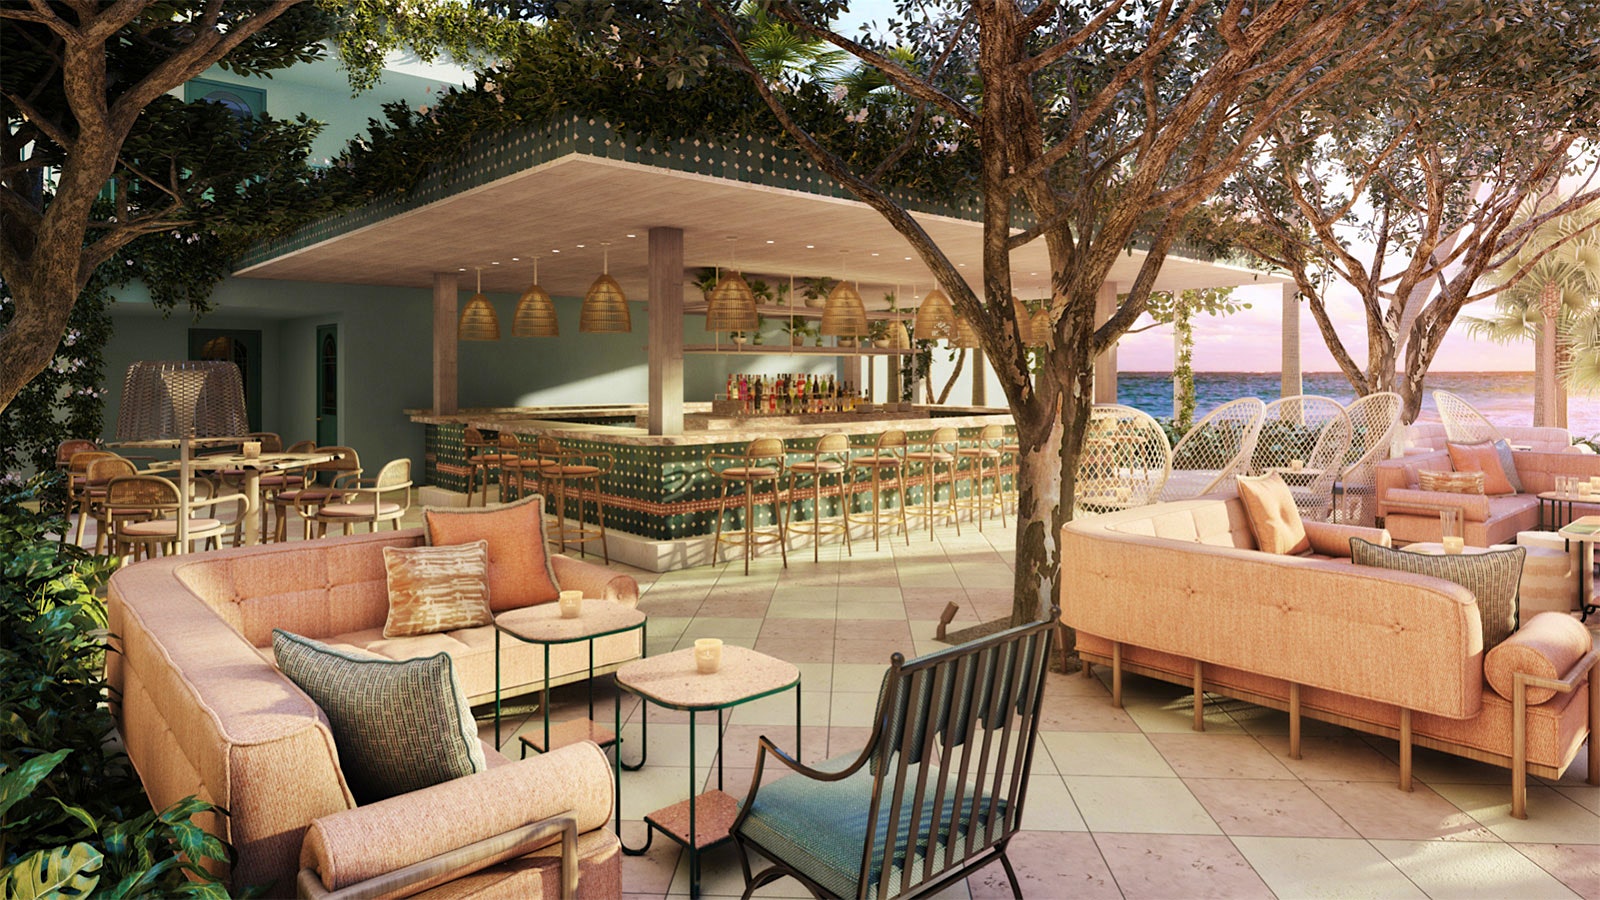  La terraza frente al mar propuesta por Casadonna con un bar y sofás con vista a la Bahía de Biscayne